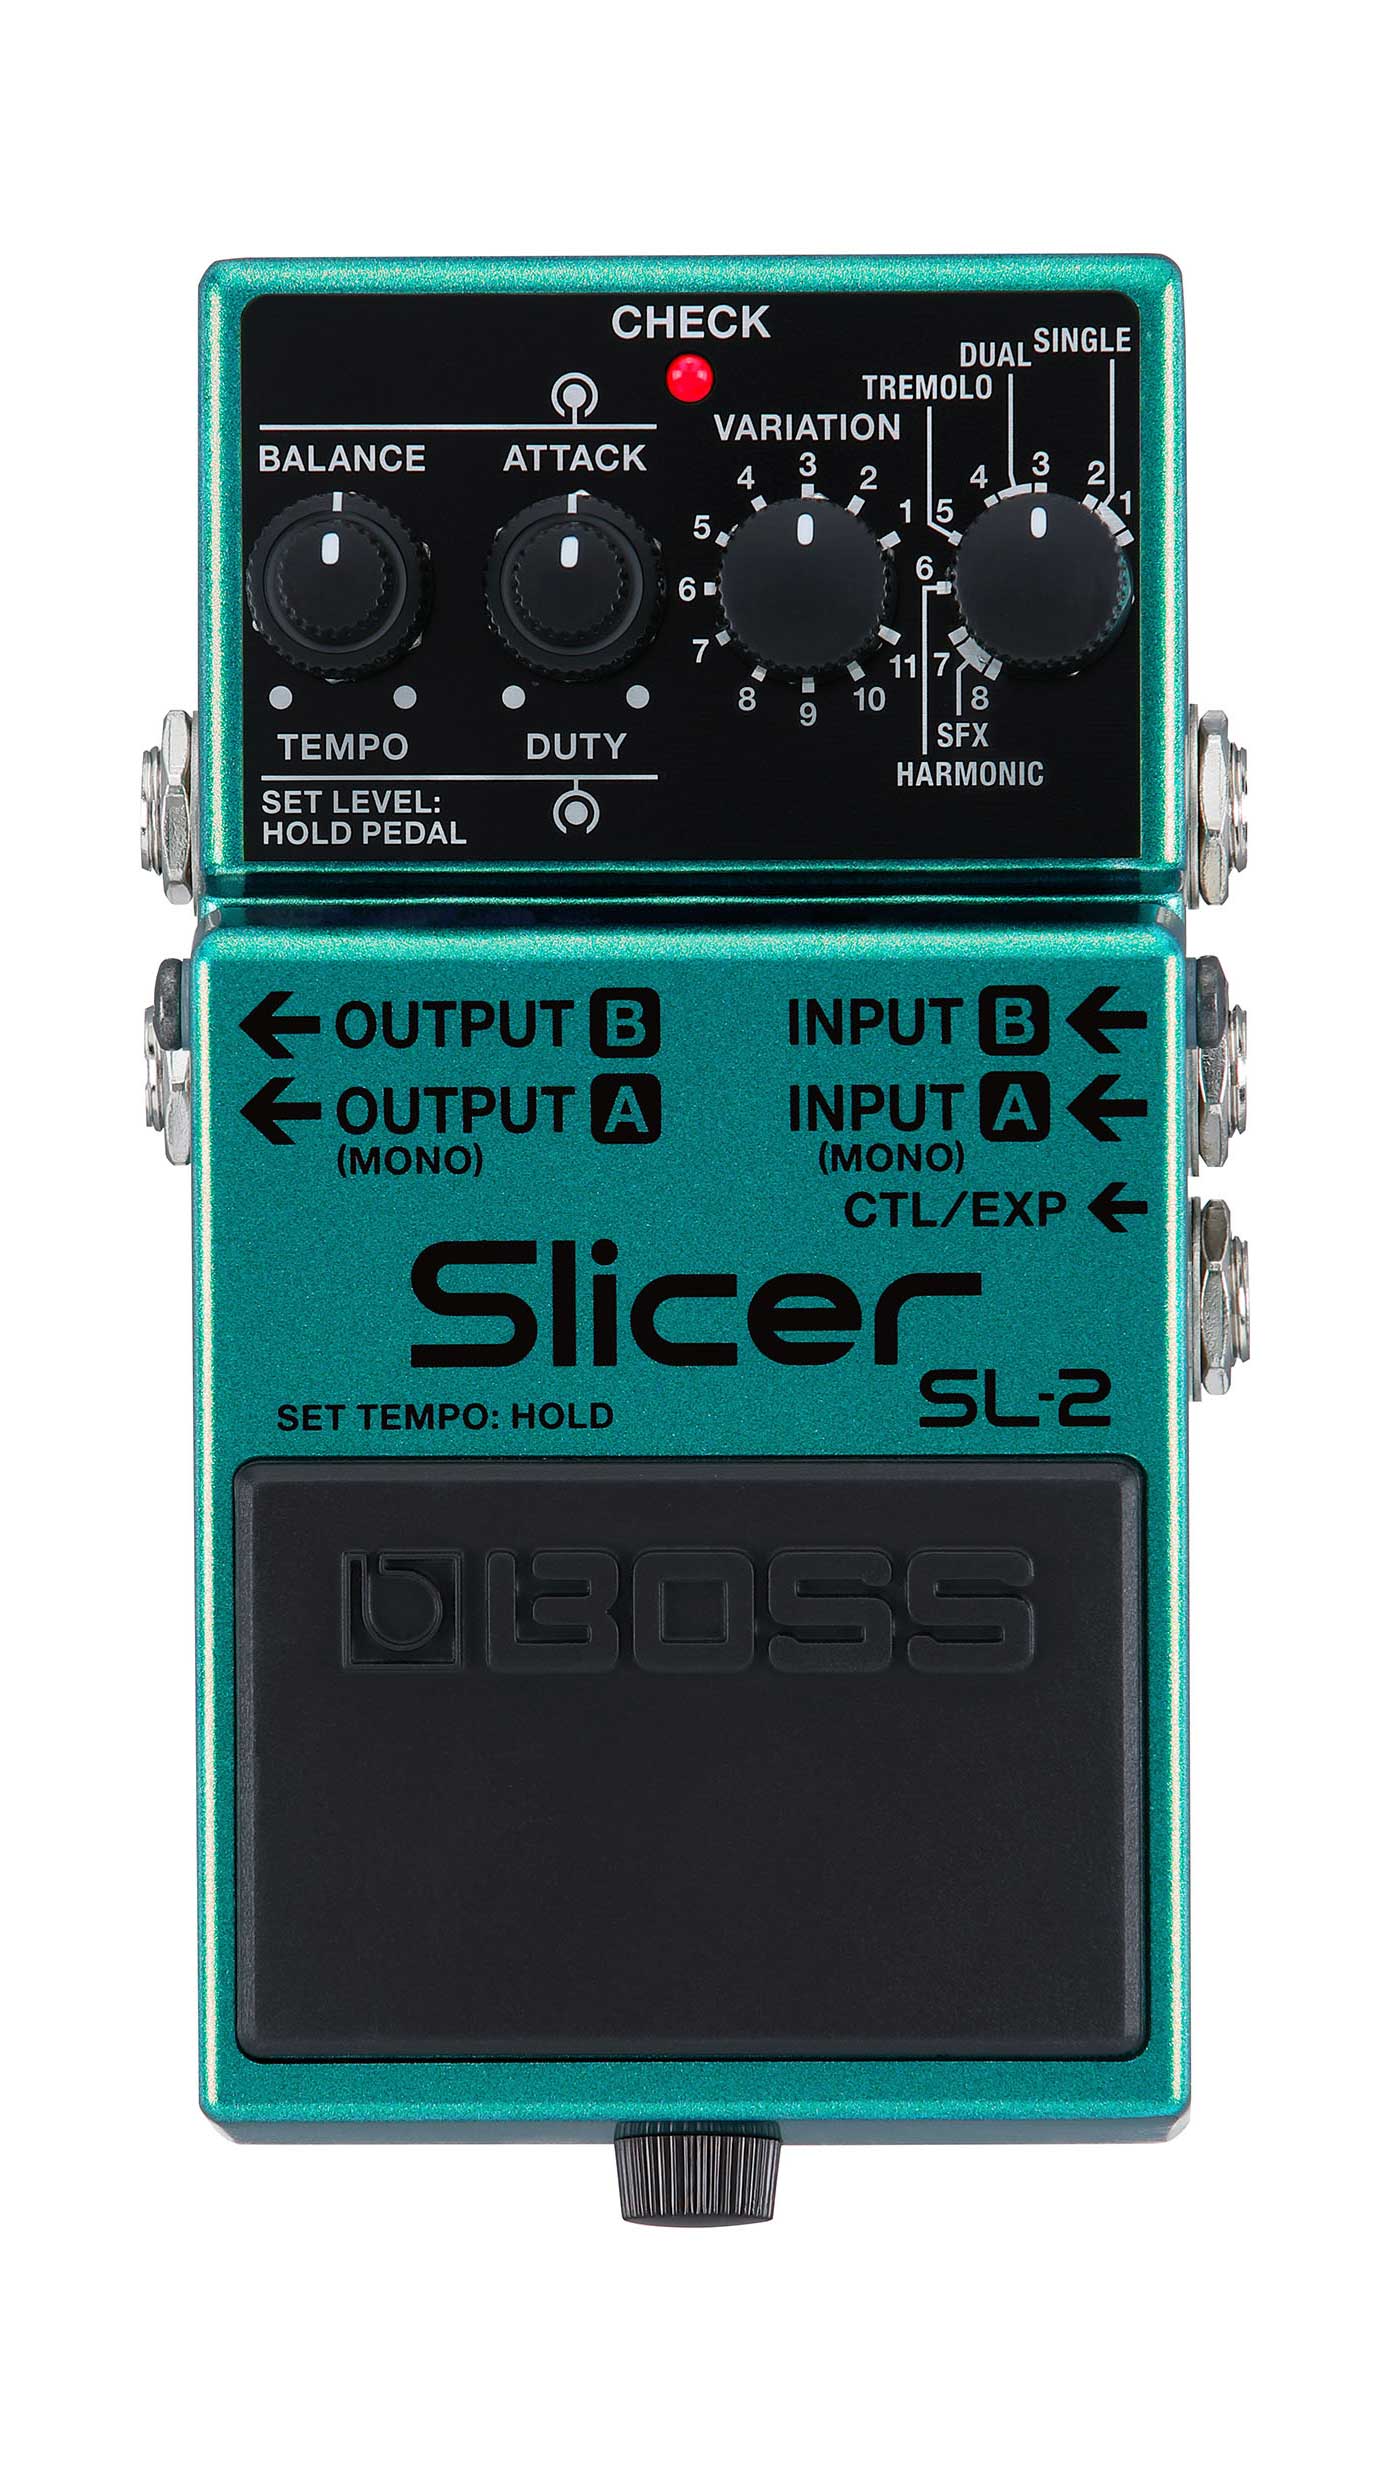 BOSS SL-2 Slicer | guitarguitar